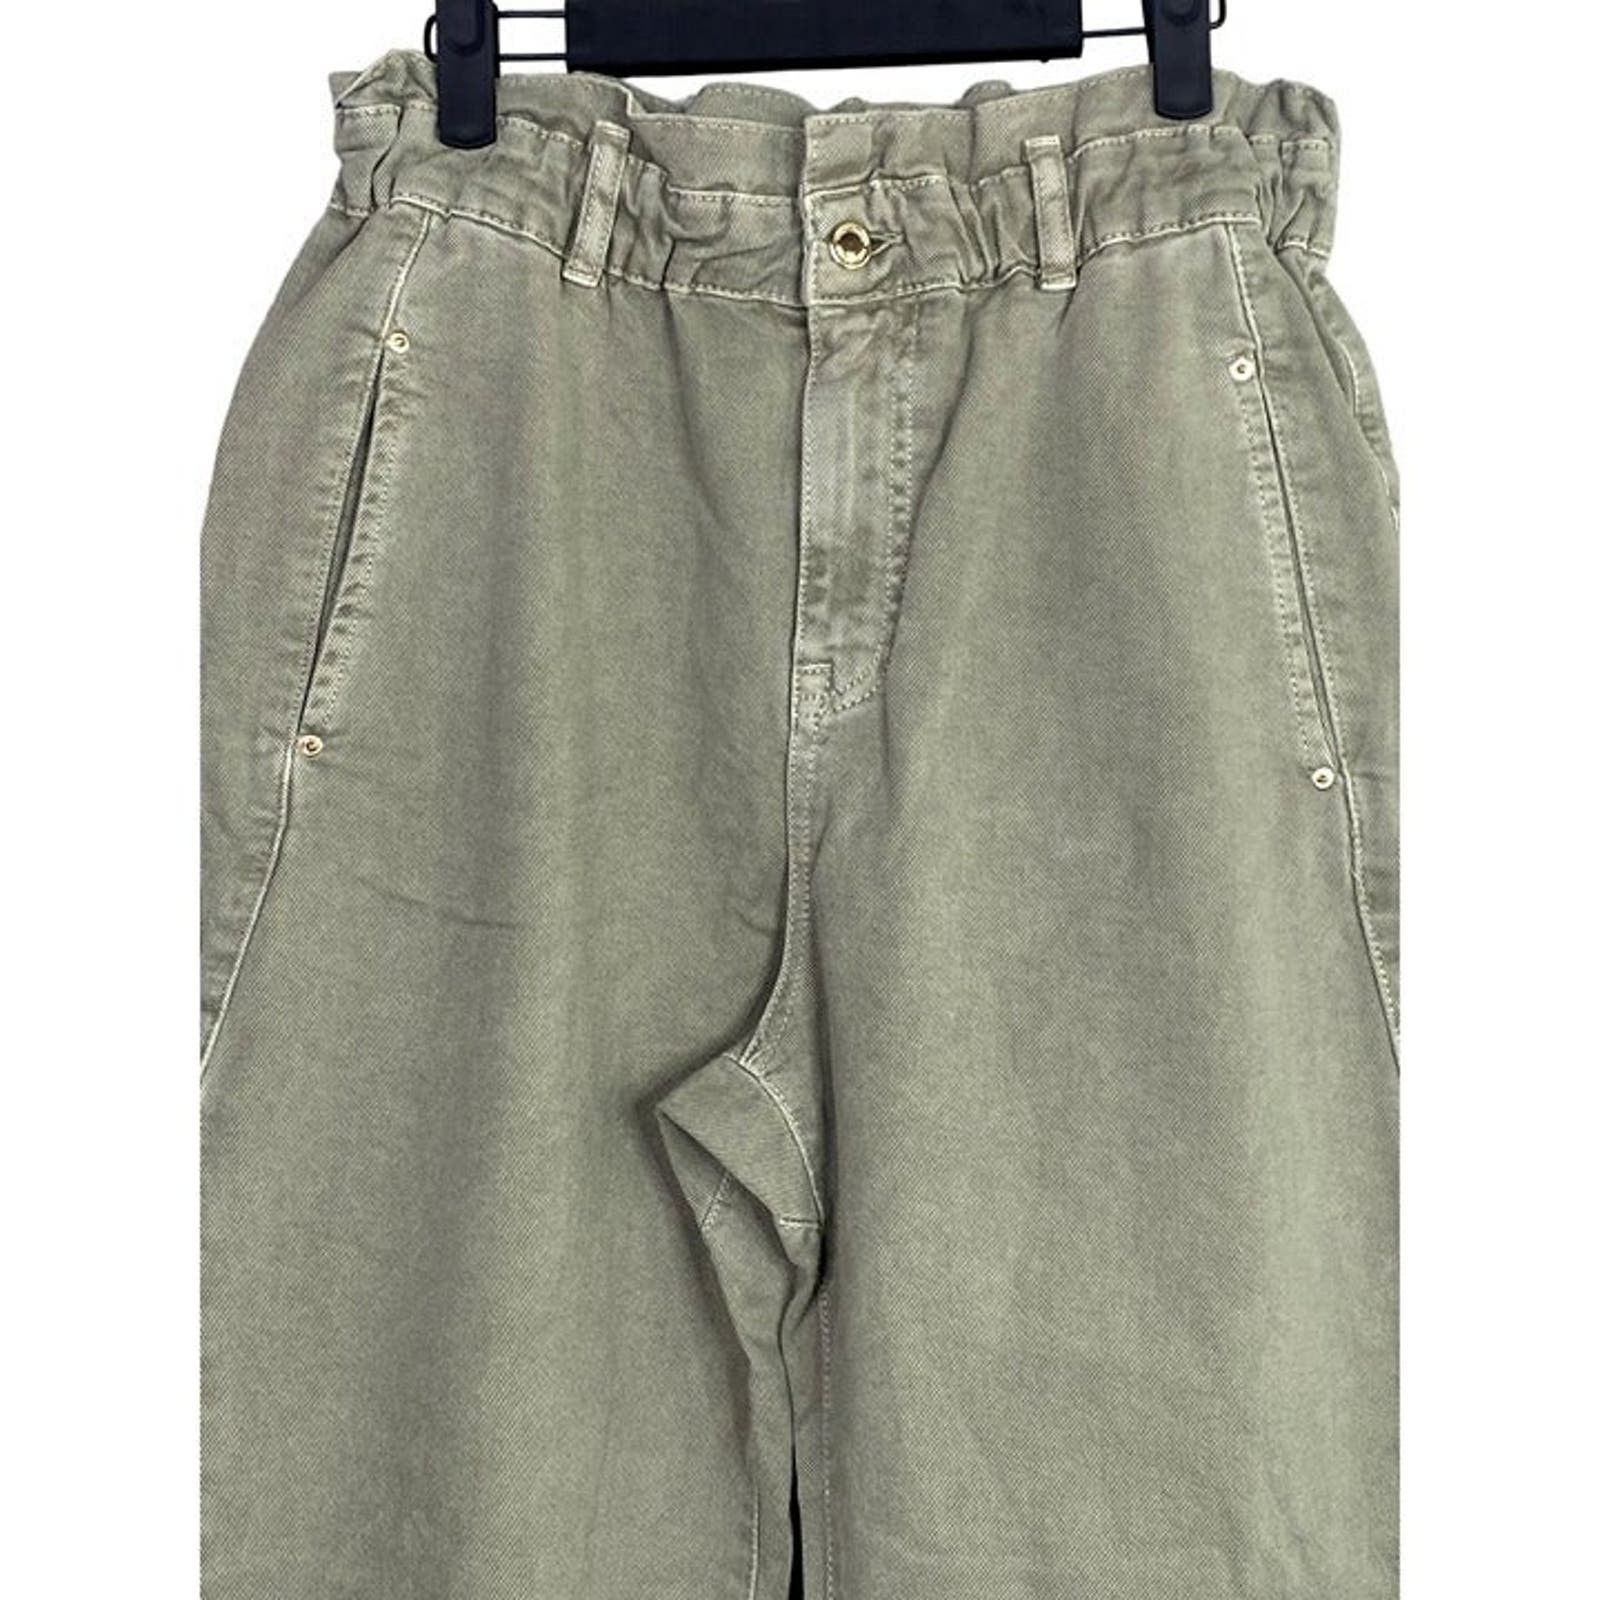 Zara Zara Paper Bag Relaxed Baggy Jeans Pants 29 Khaki Green Size 29" - 5 Thumbnail